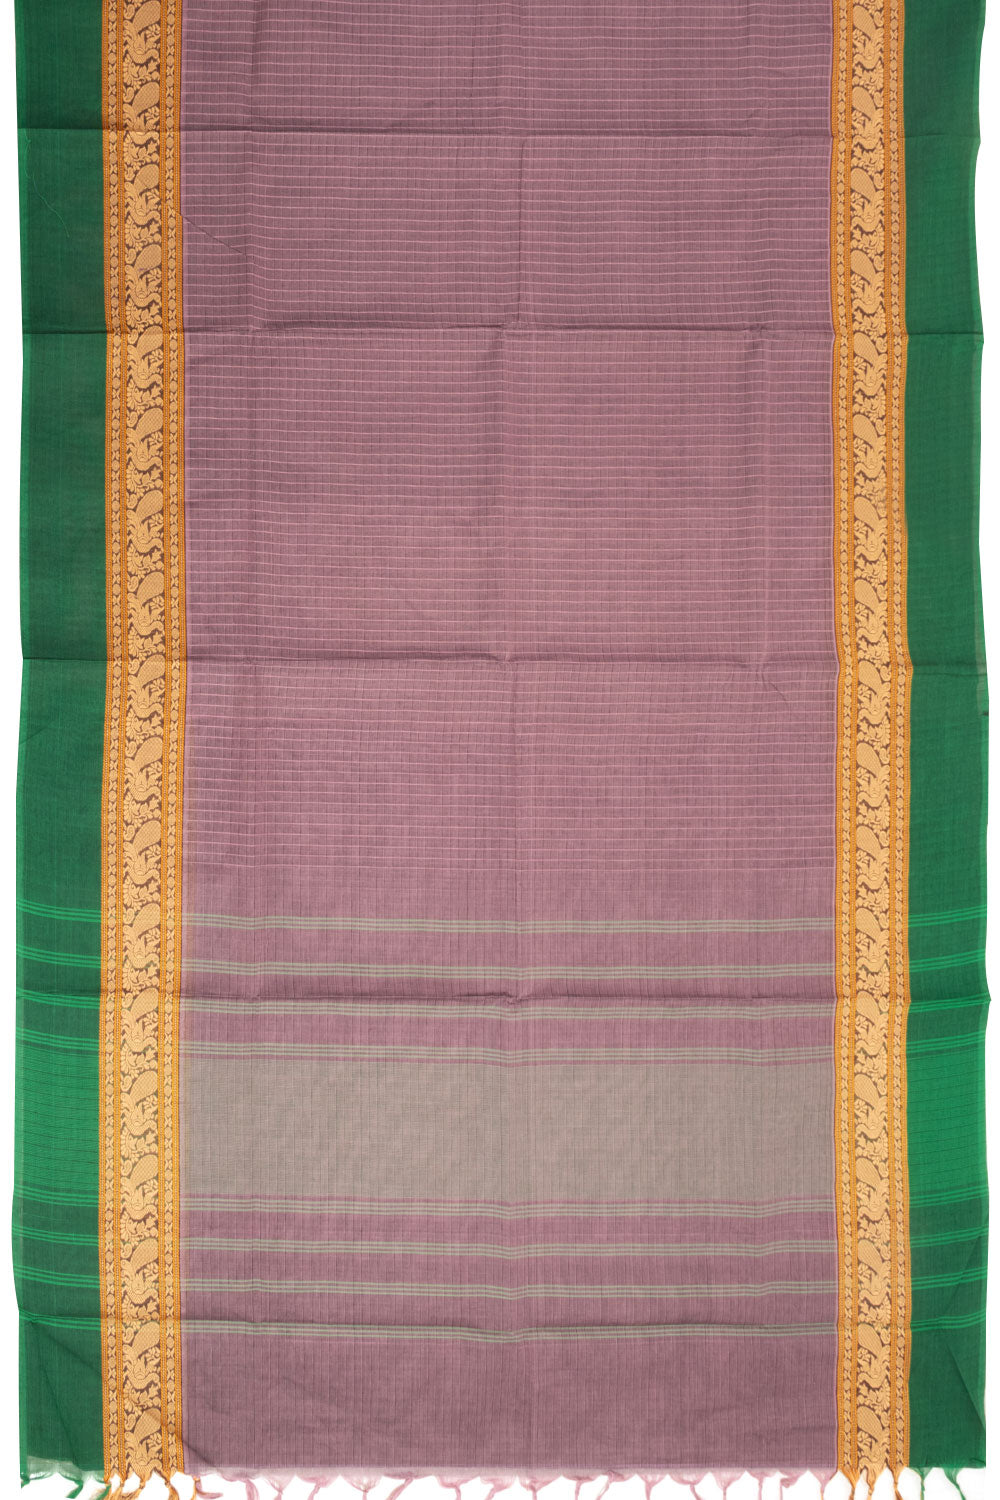 Mavue Handwoven Kanchi Cotton Saree 10068511 - Avishya